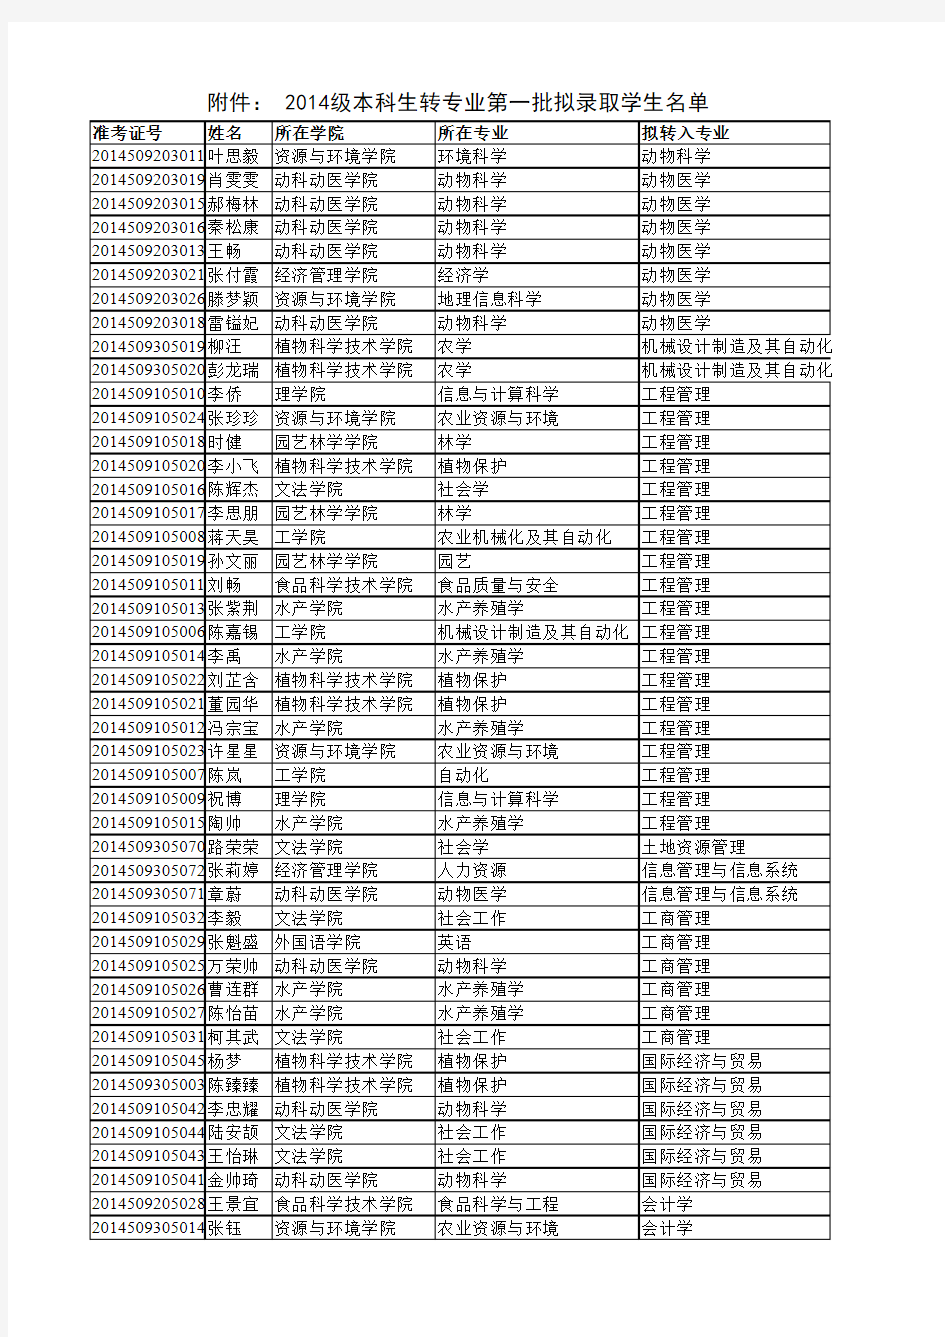 华中农业大学2014级本科生转专业第一批拟录取学生名单的公示